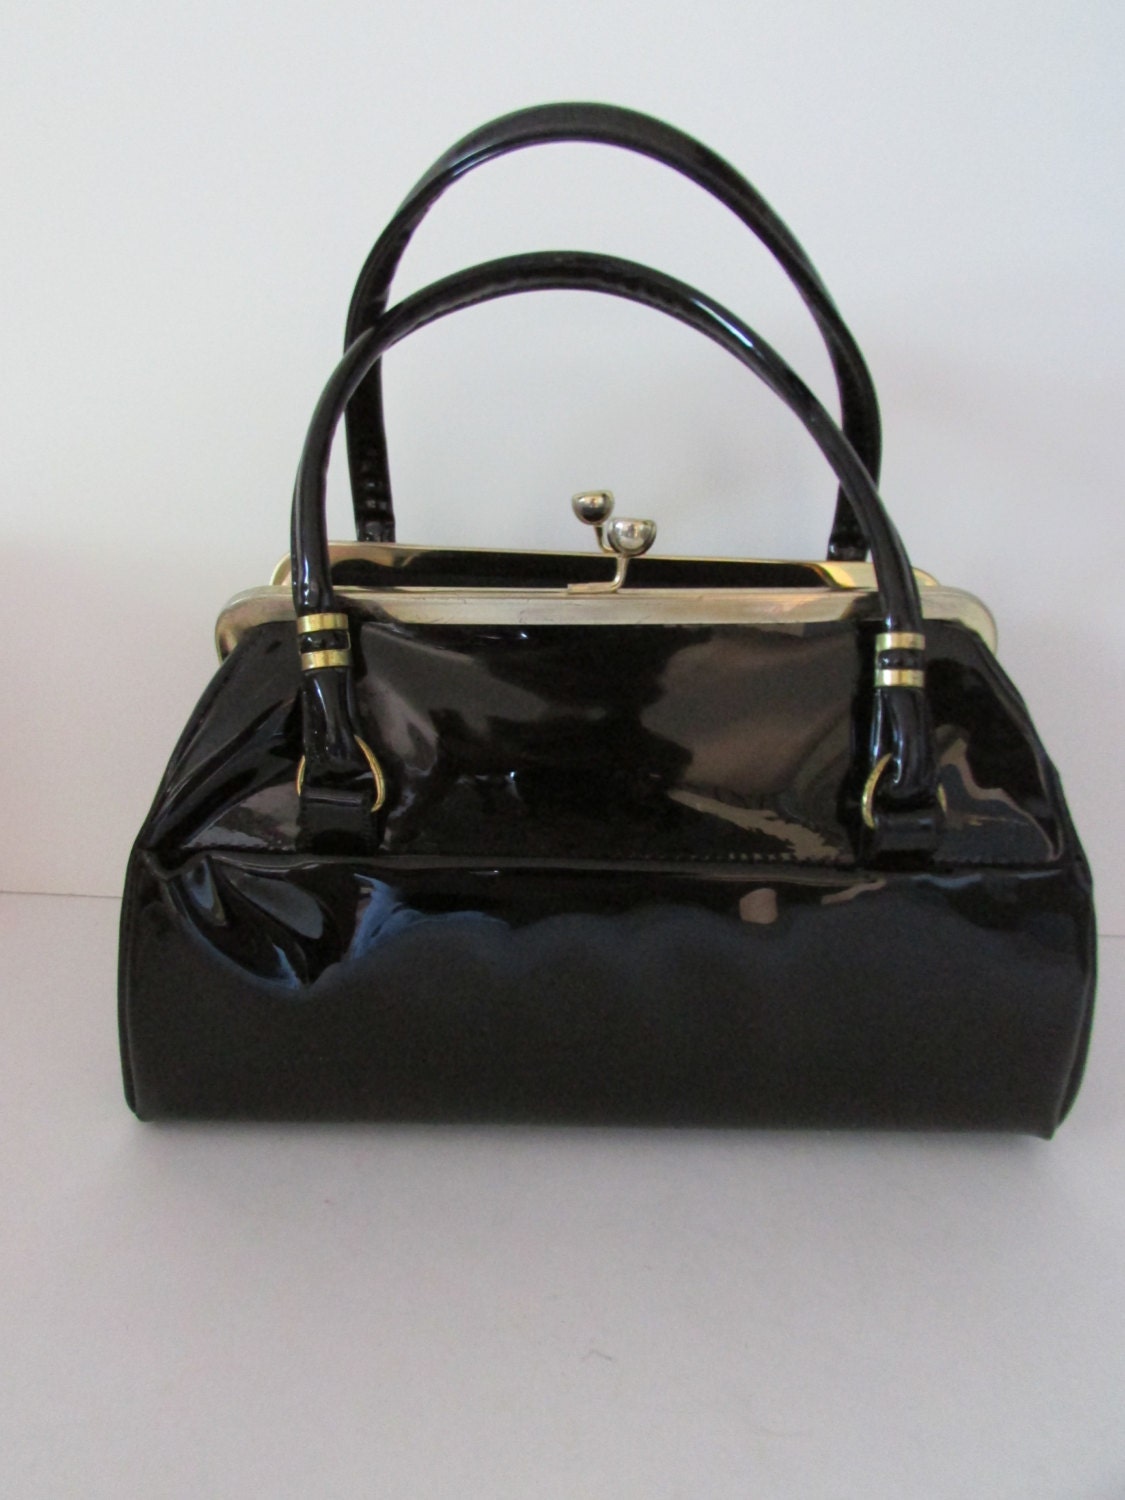 Vintage Handbag Black Patent Leather Barrell Bag